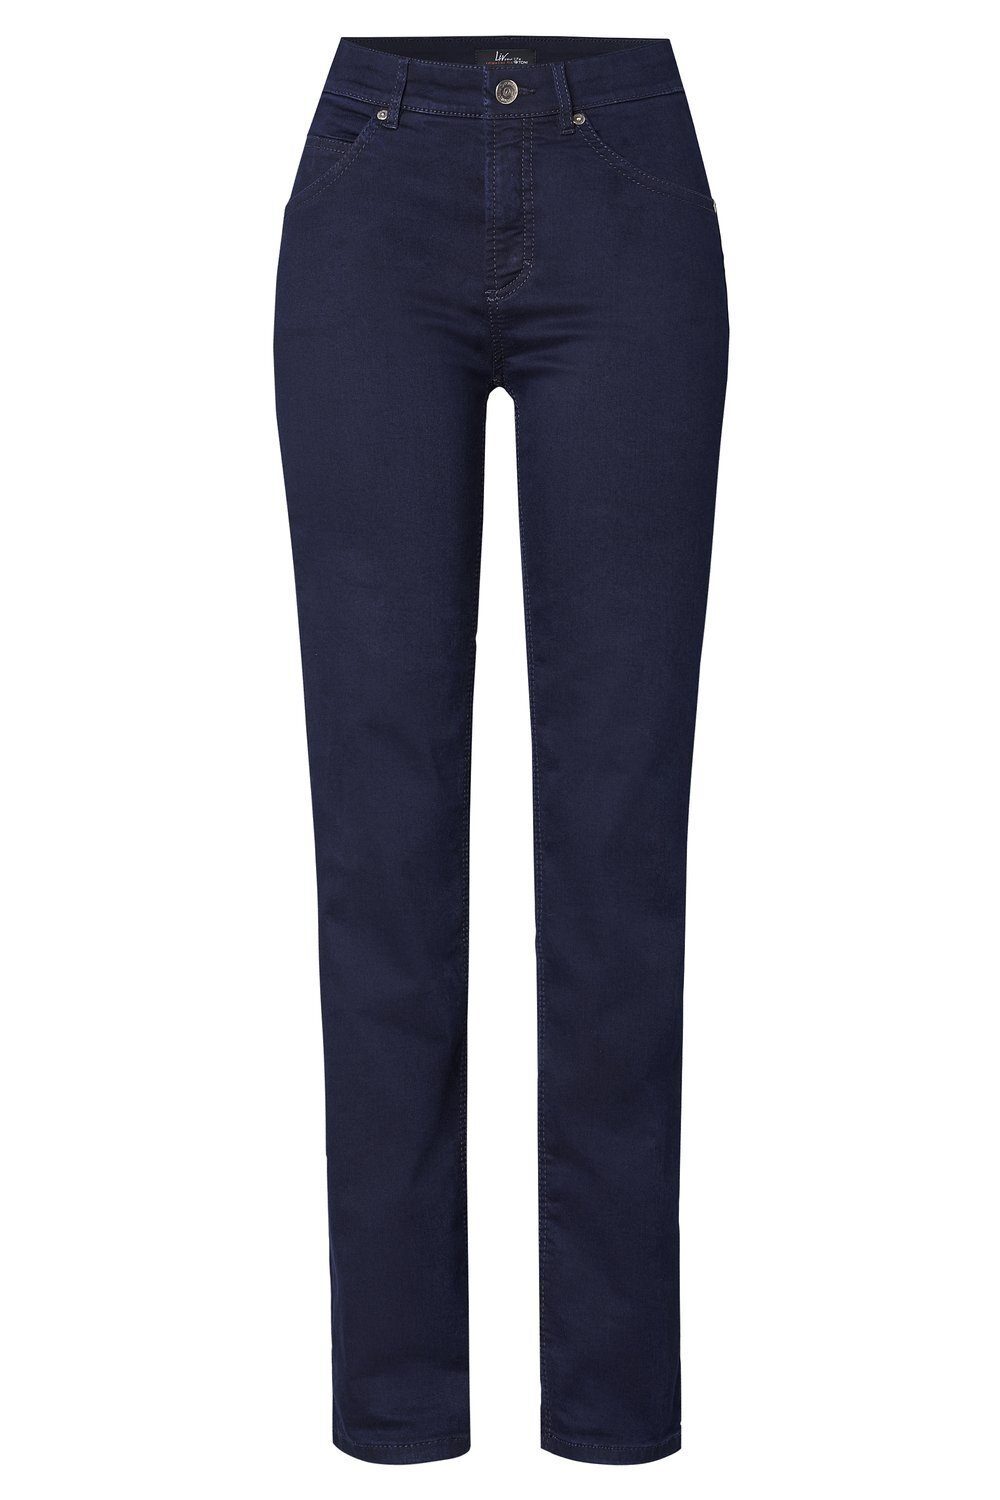 TONI 5-Pocket-Jeans Liv - dunkelblau Regular-Fit in 059